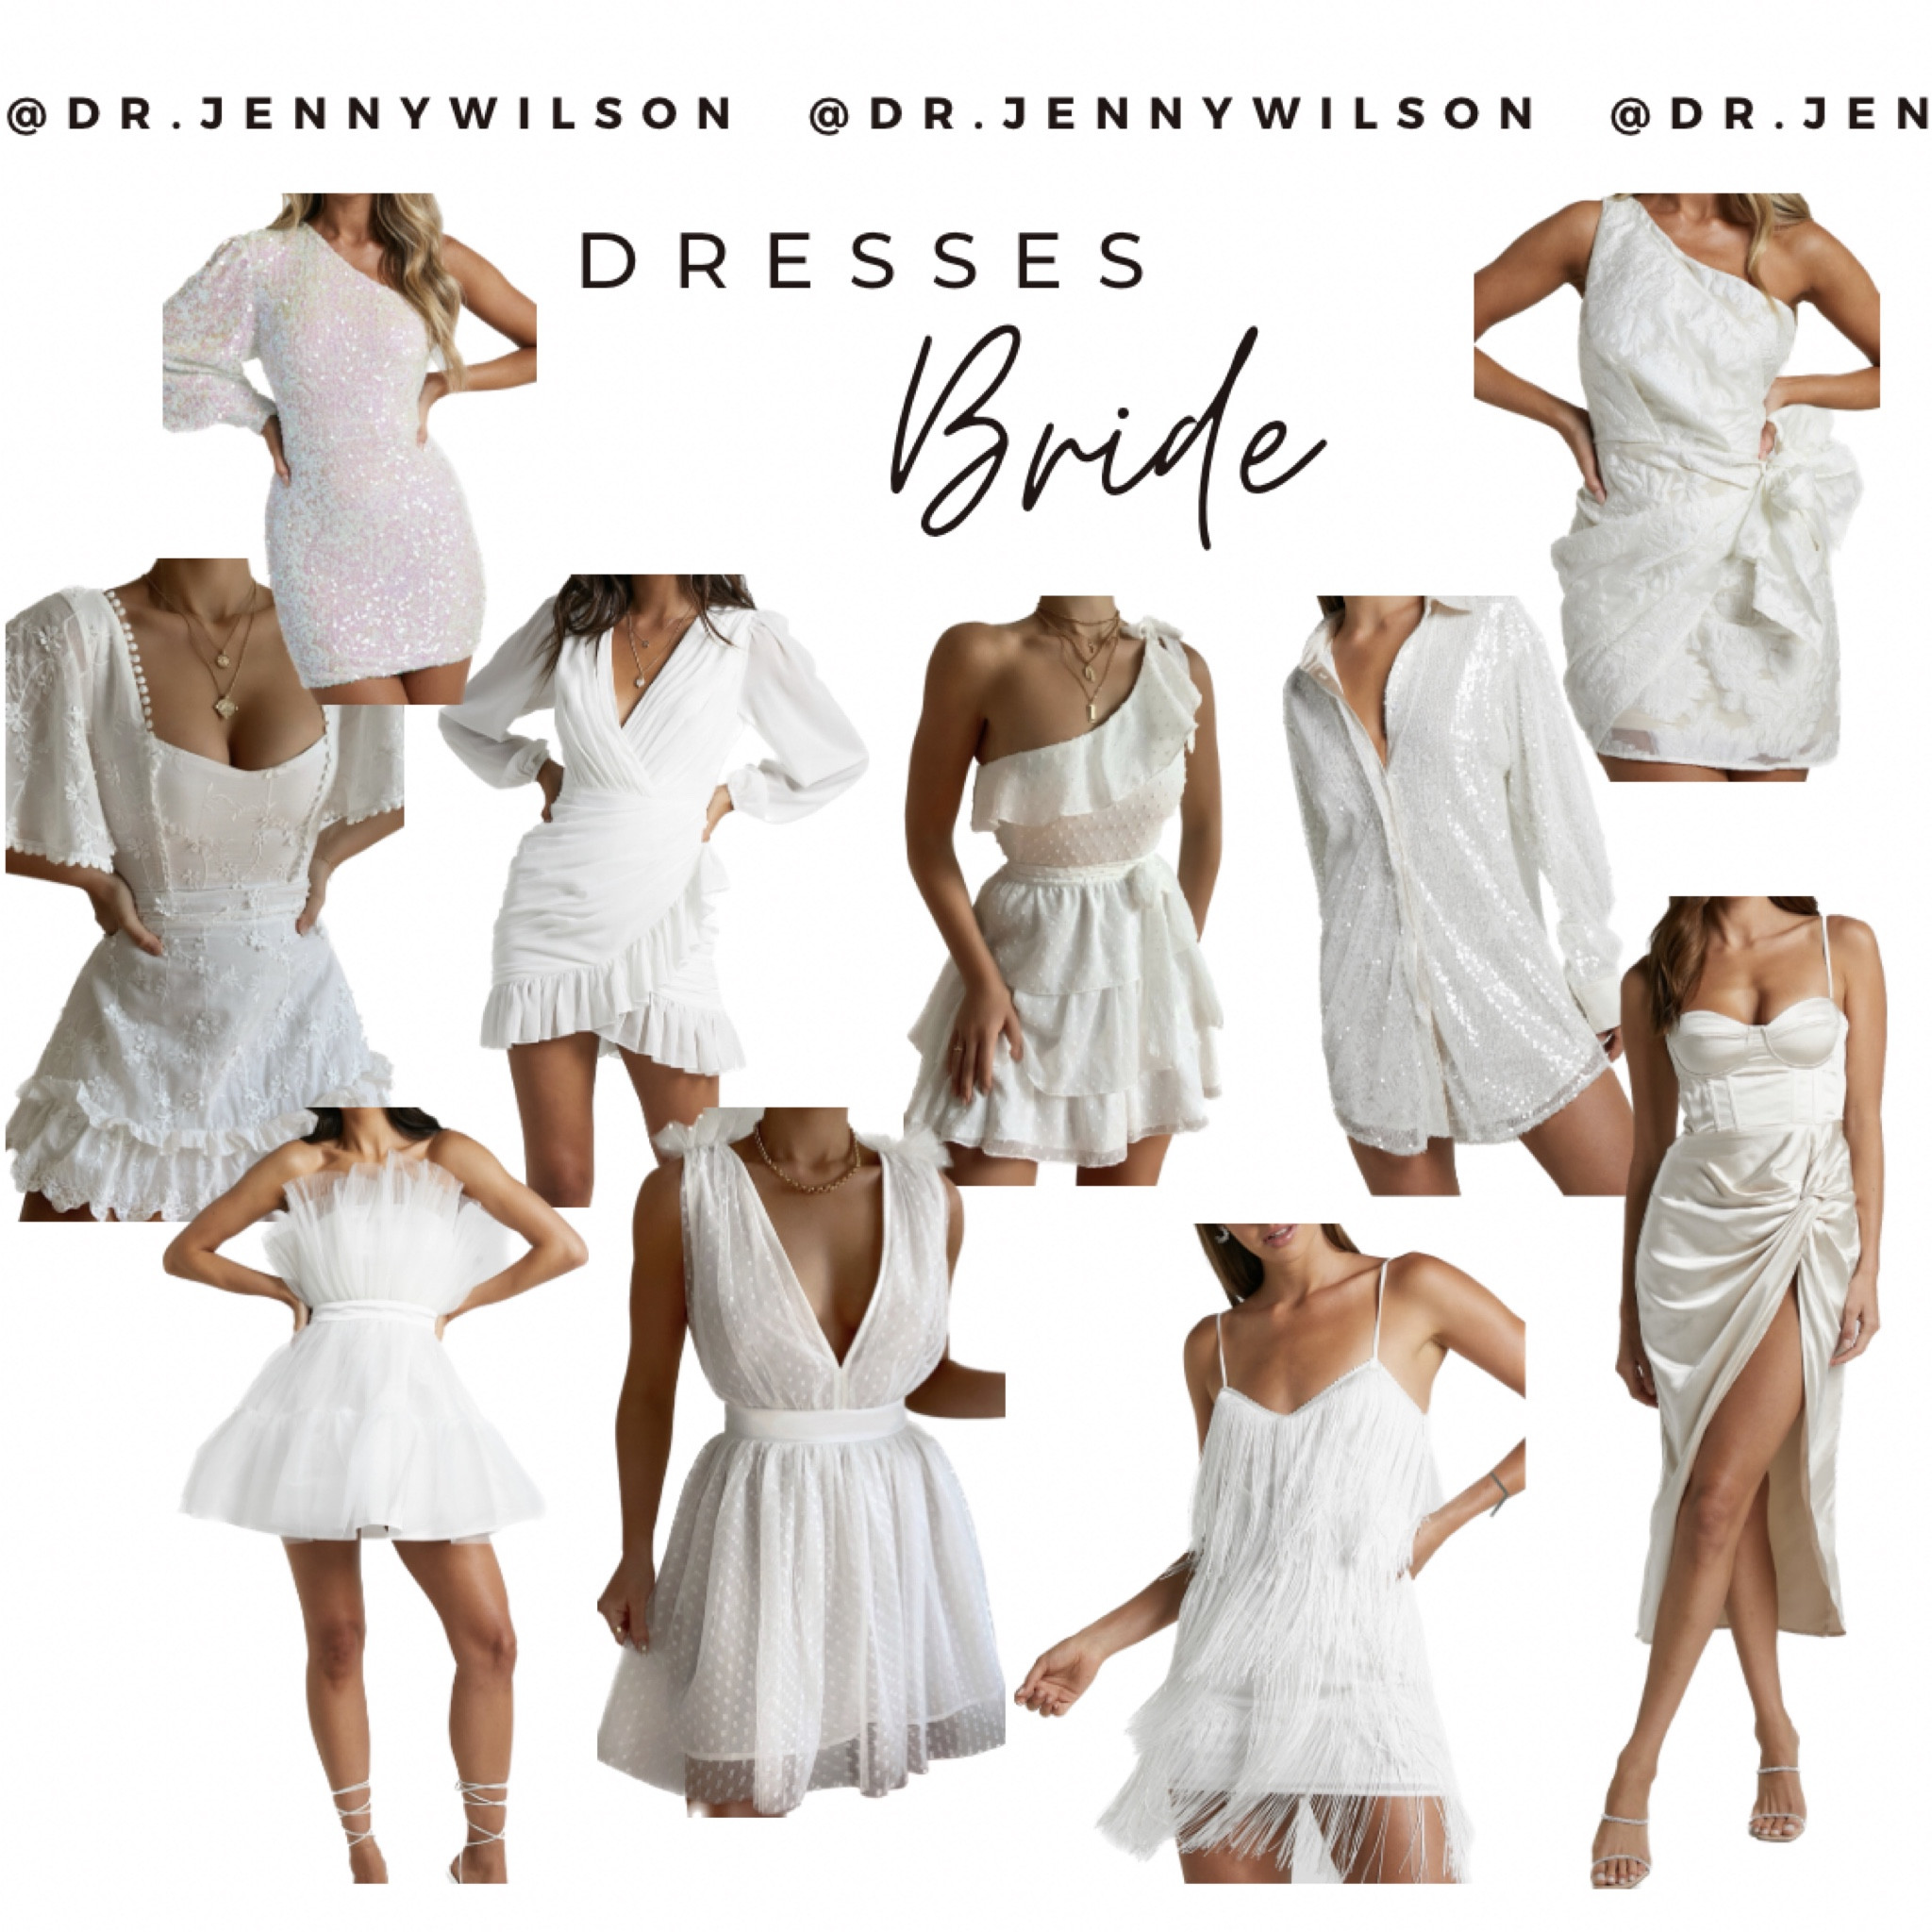 Siofra Mini Dress - Zig Zag Fringe Dress in White